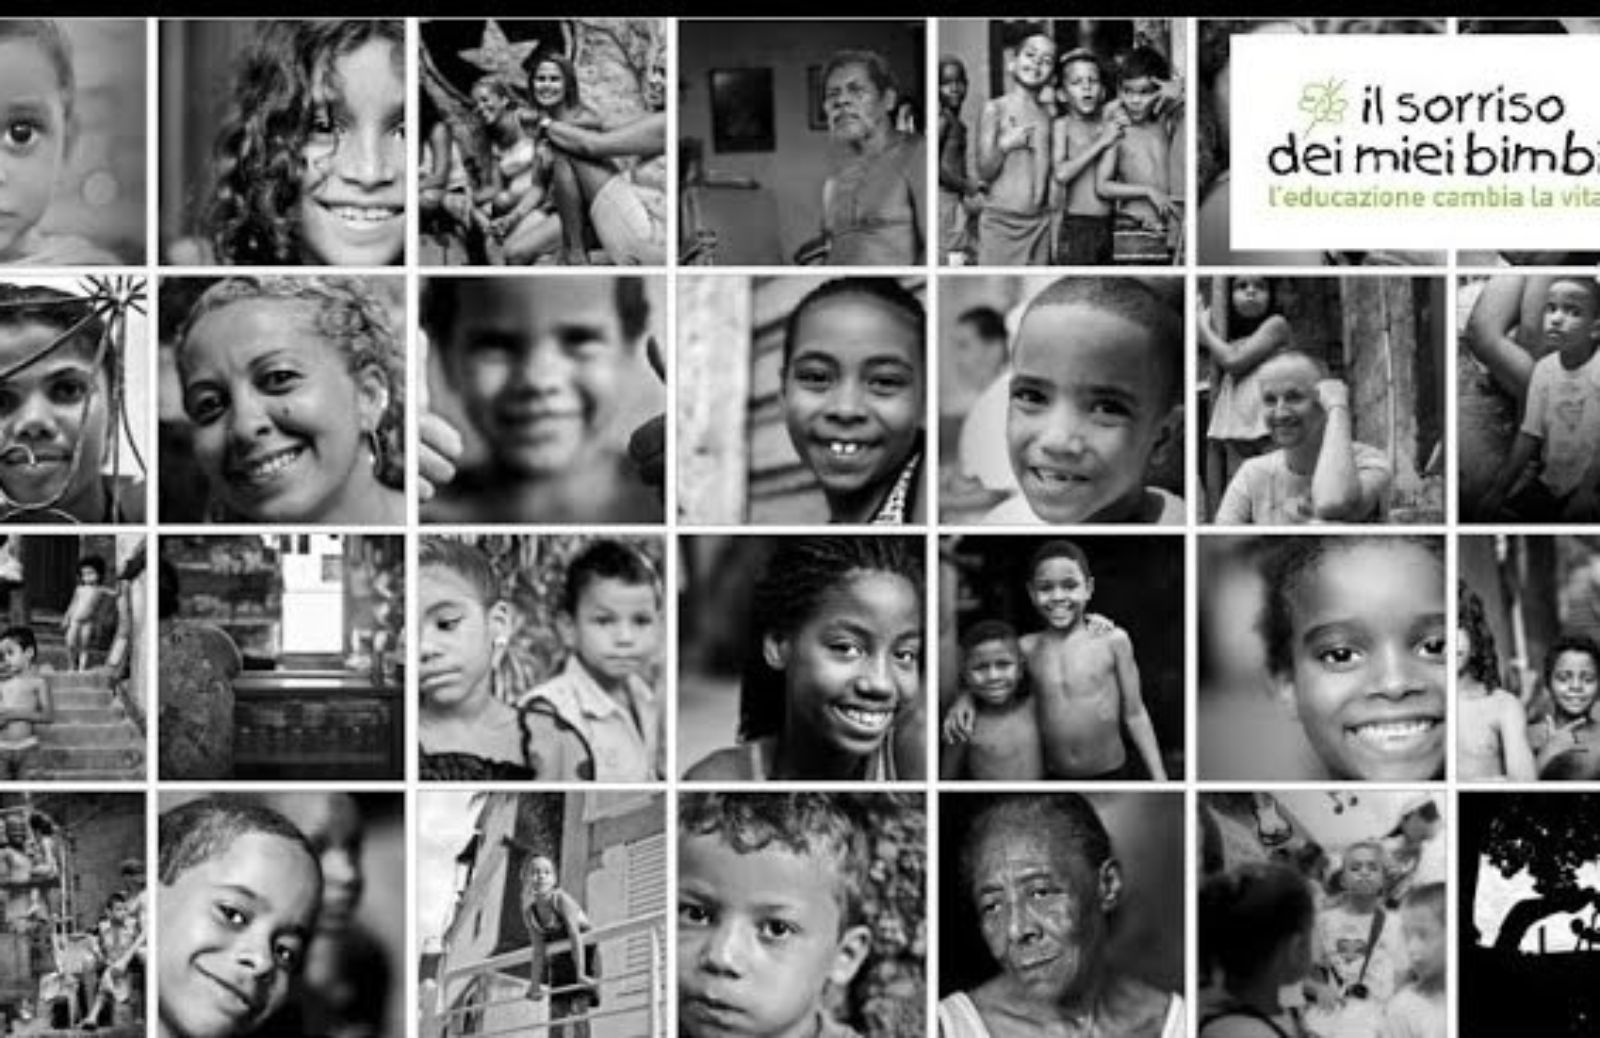 Il sorriso dei miei bimbi: un aiuto concreto per i bambini delle favelas